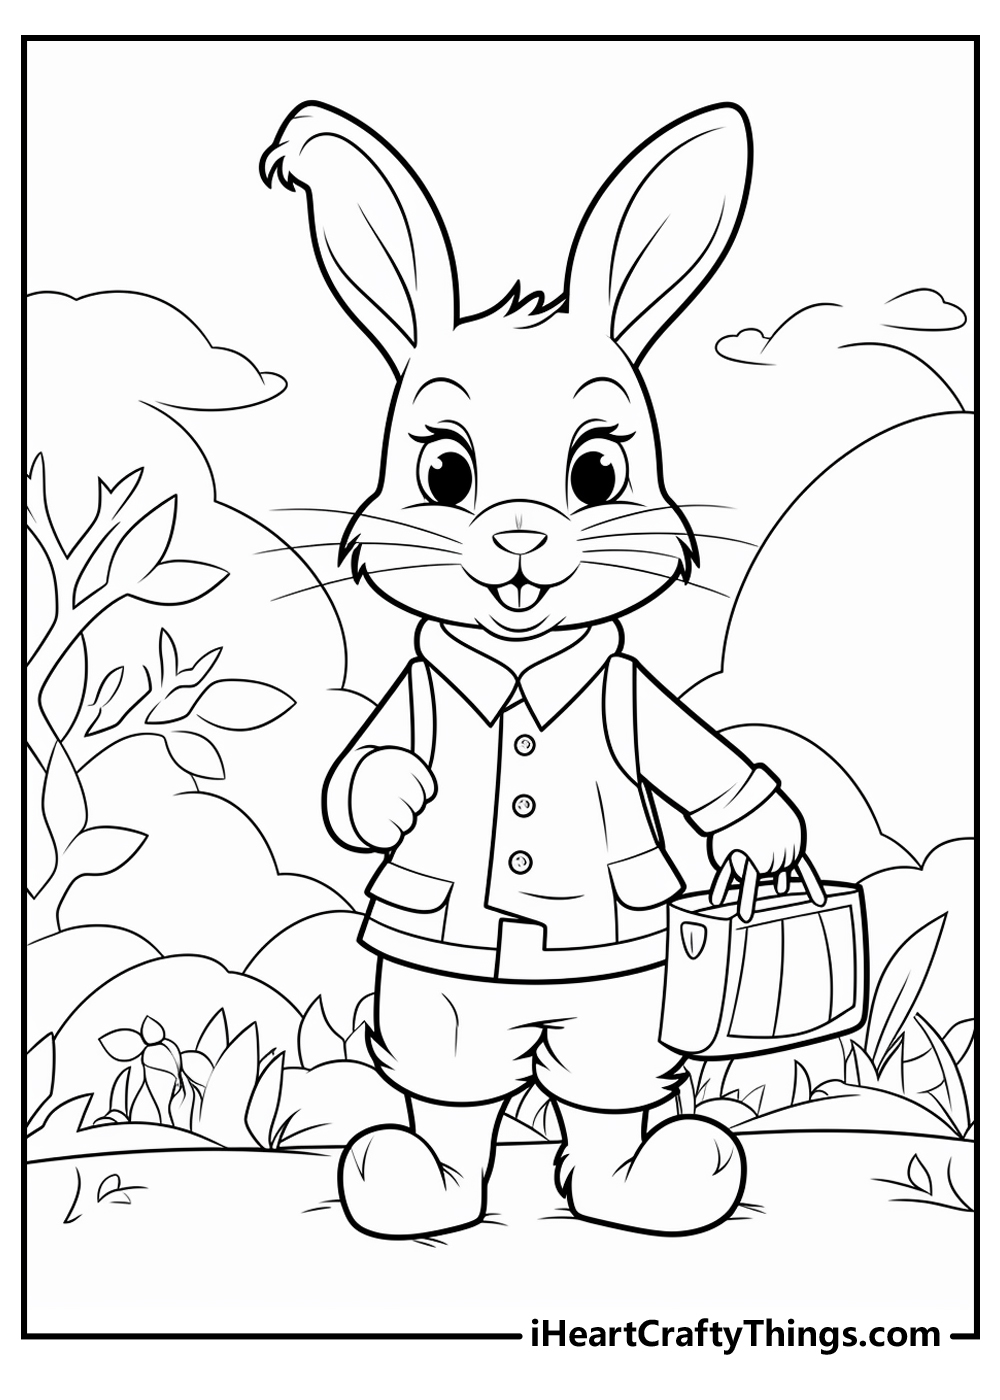 peter rabbit coloring sheet free download